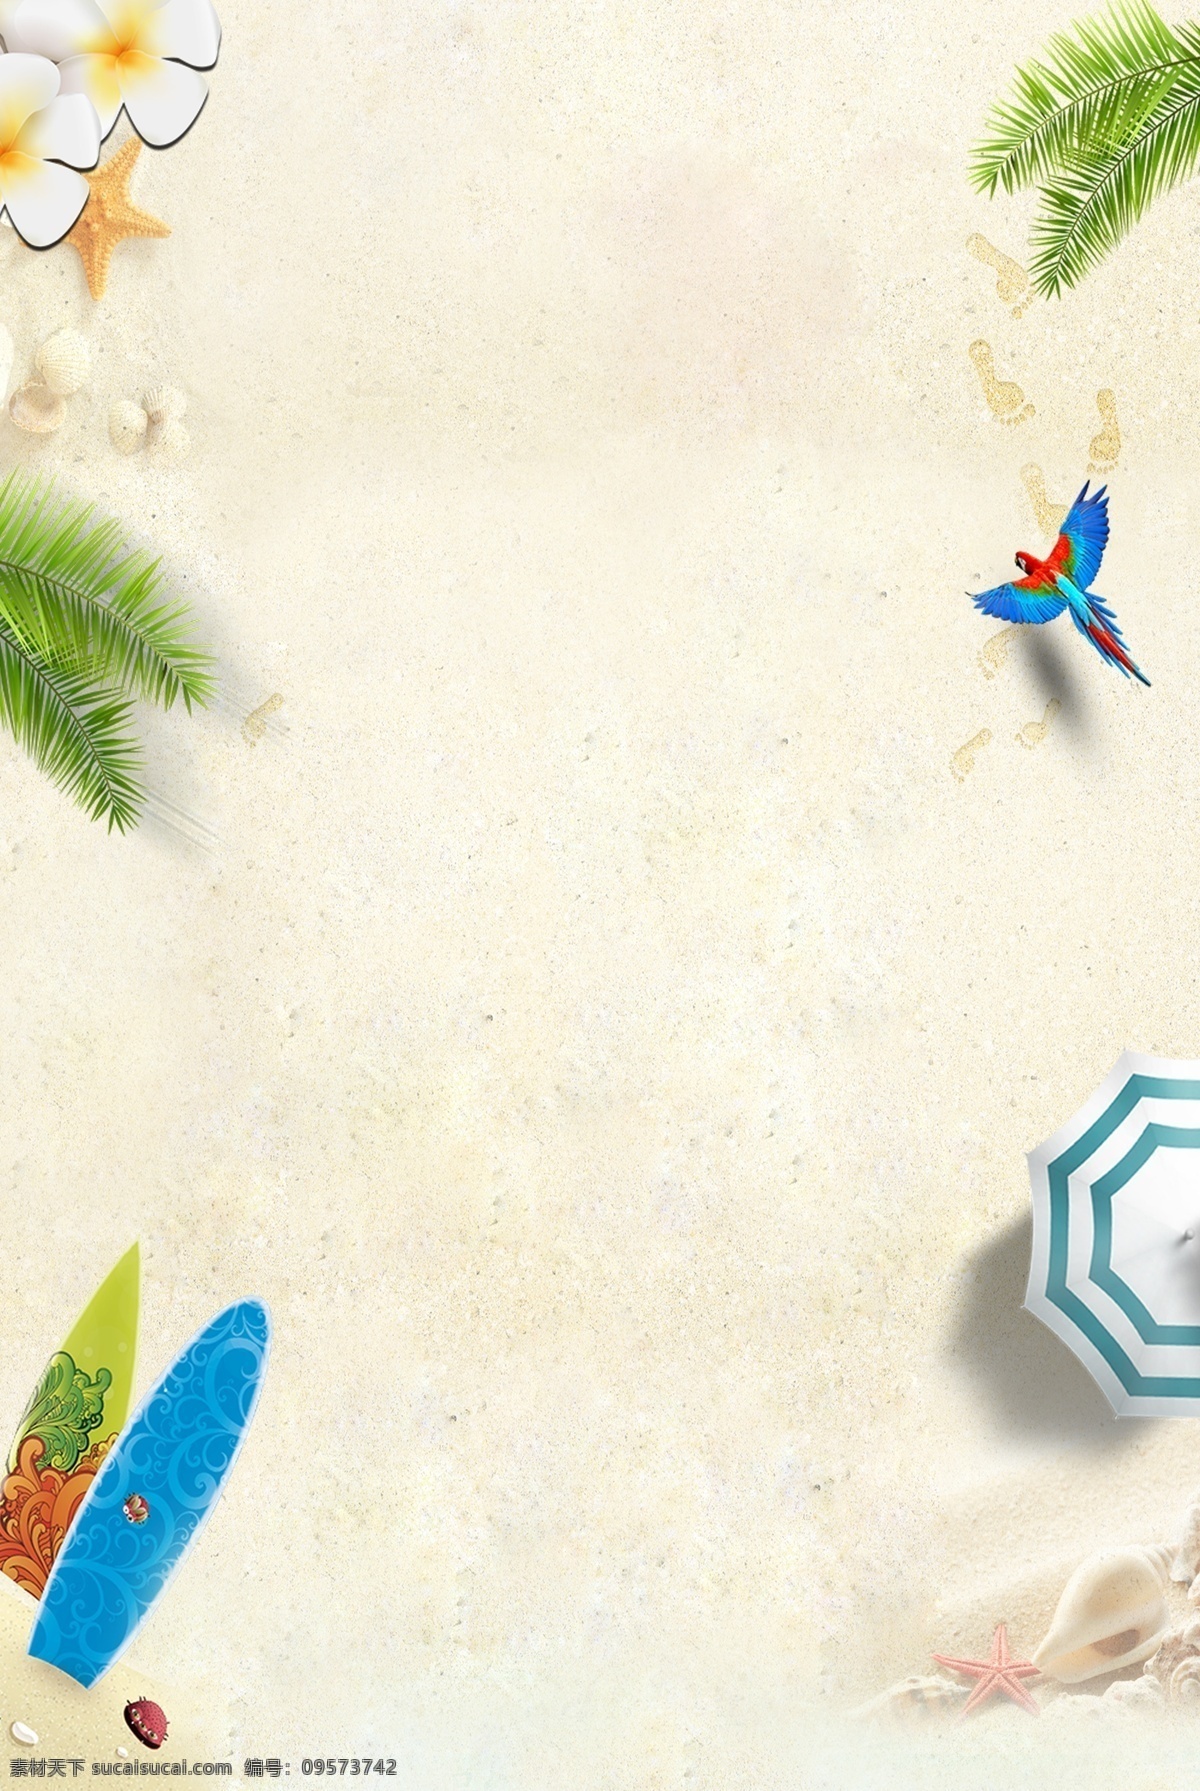 夏季 旅游休闲 海报 背景 旅游 清新 滑板 遮阳伞 海星 沙滩 植物 简约